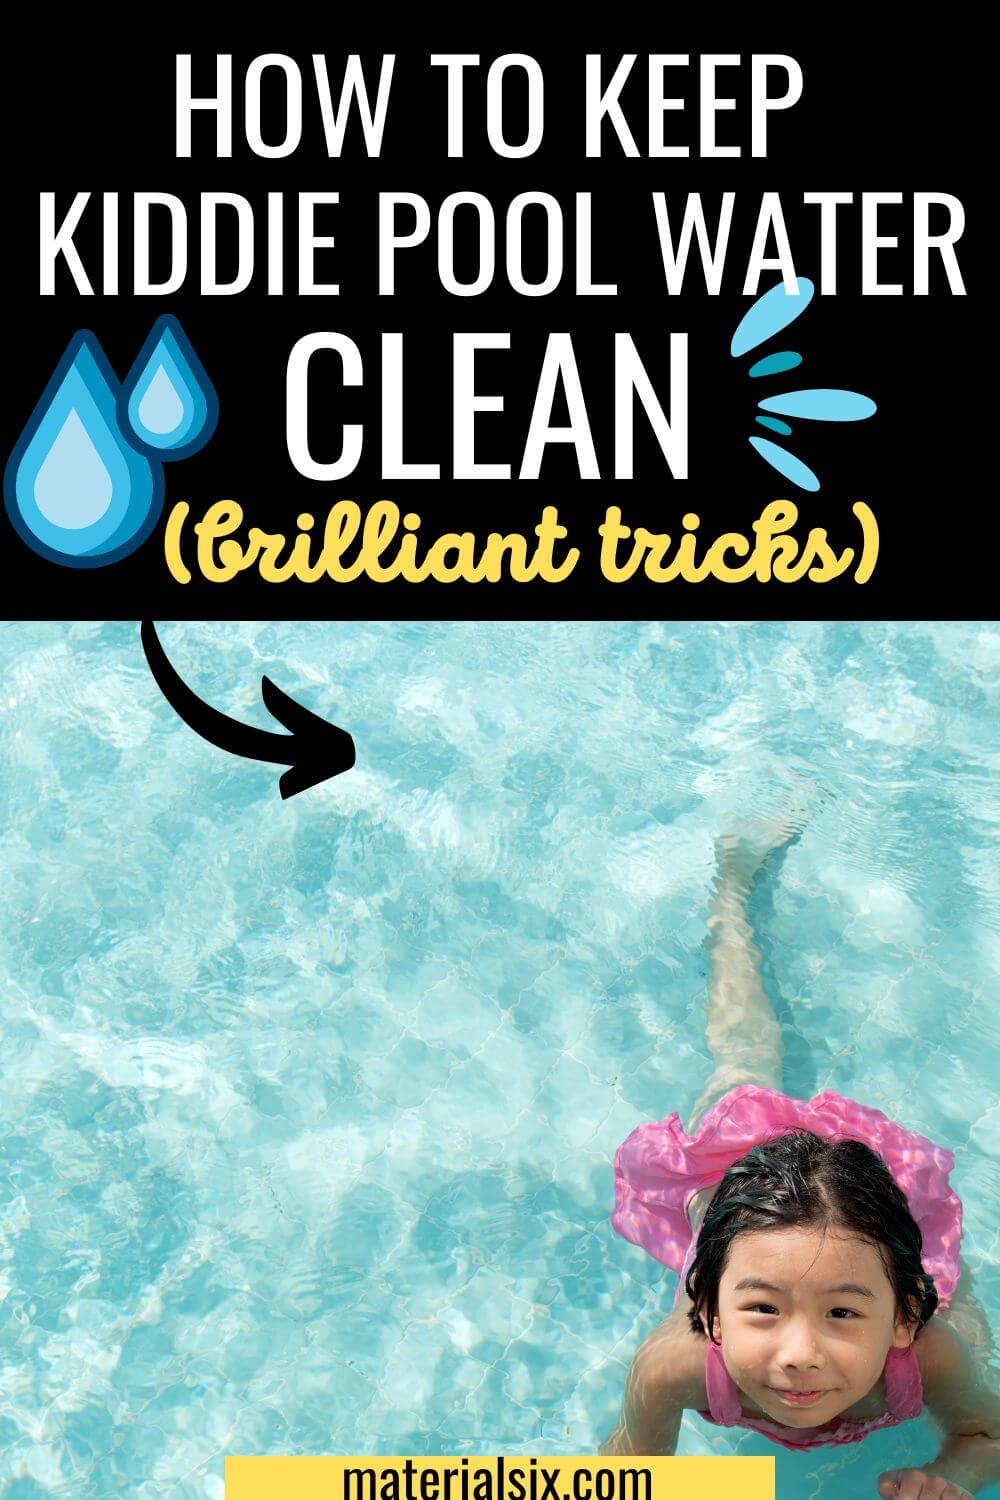 How to Keep Kiddie Pool Water Clean